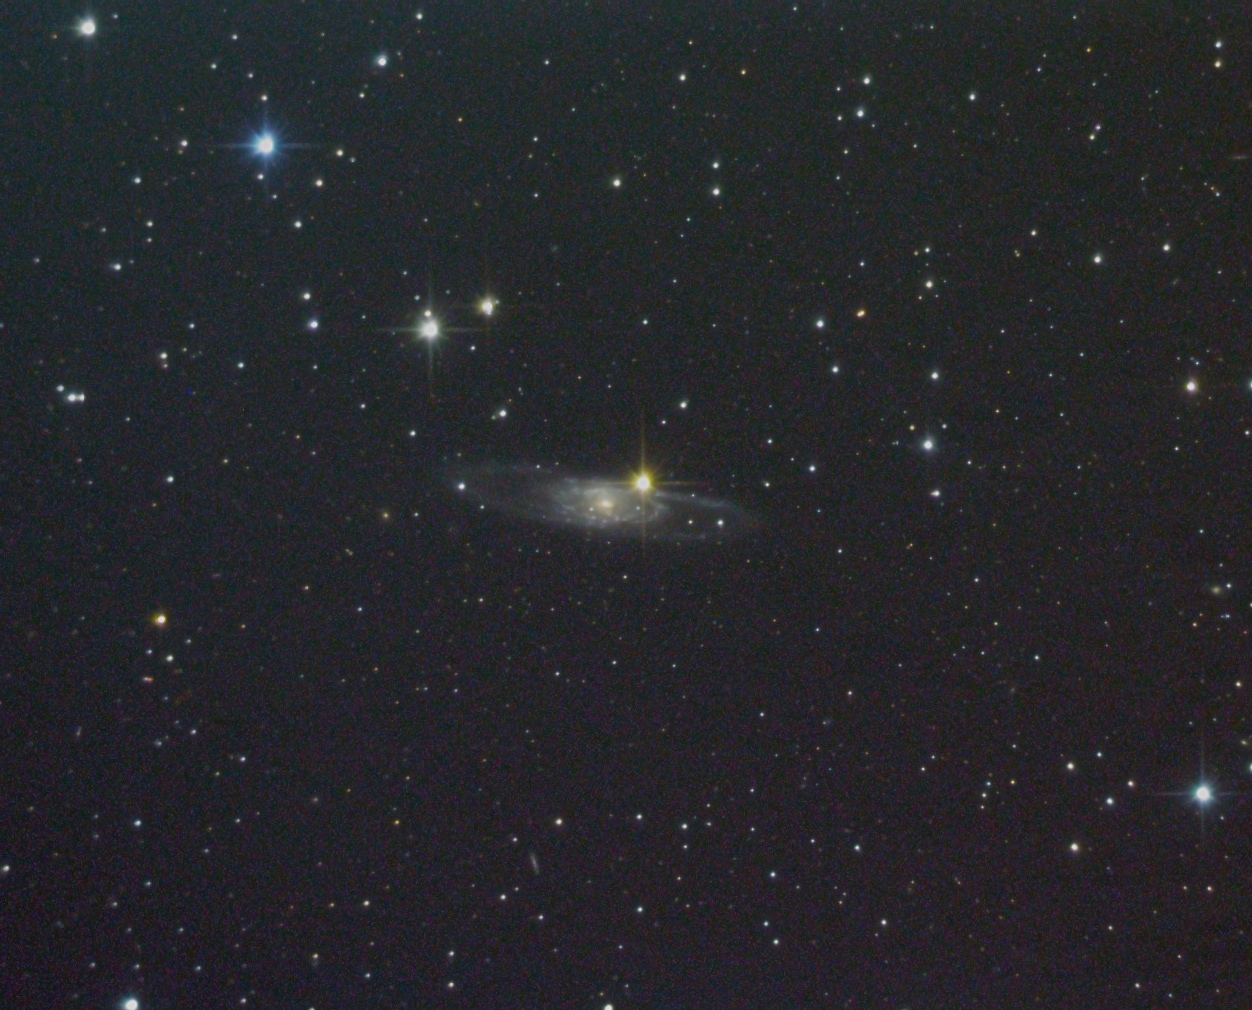 NGC 5792